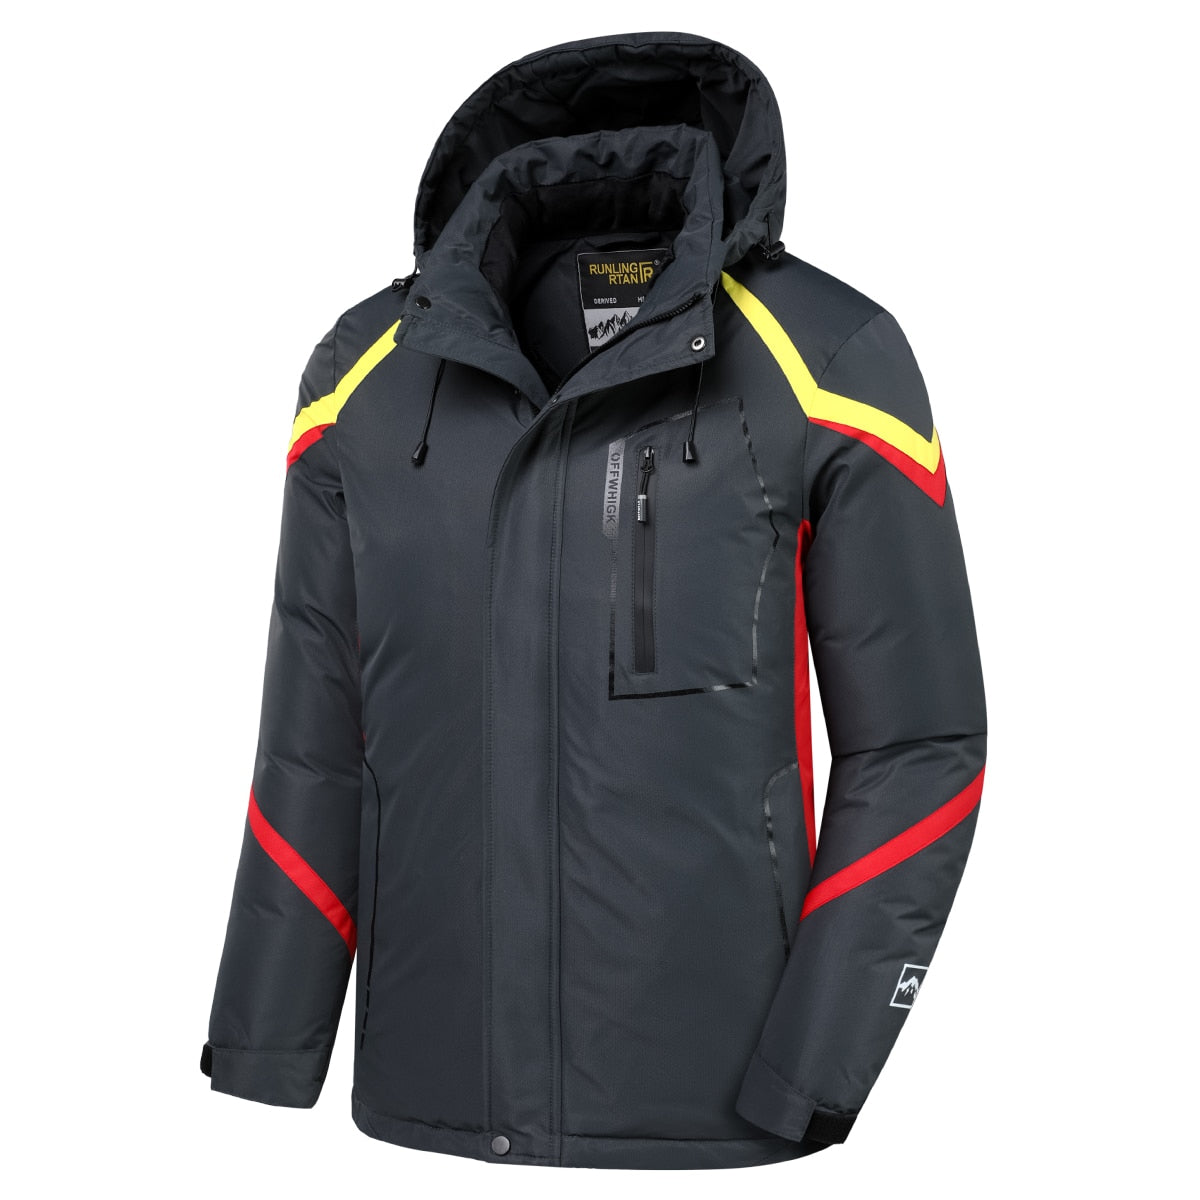 Men's Winter Hooded Waterproof Thick Fleece Outdoor Jet Ski Jacket (12 Colors/Styles)